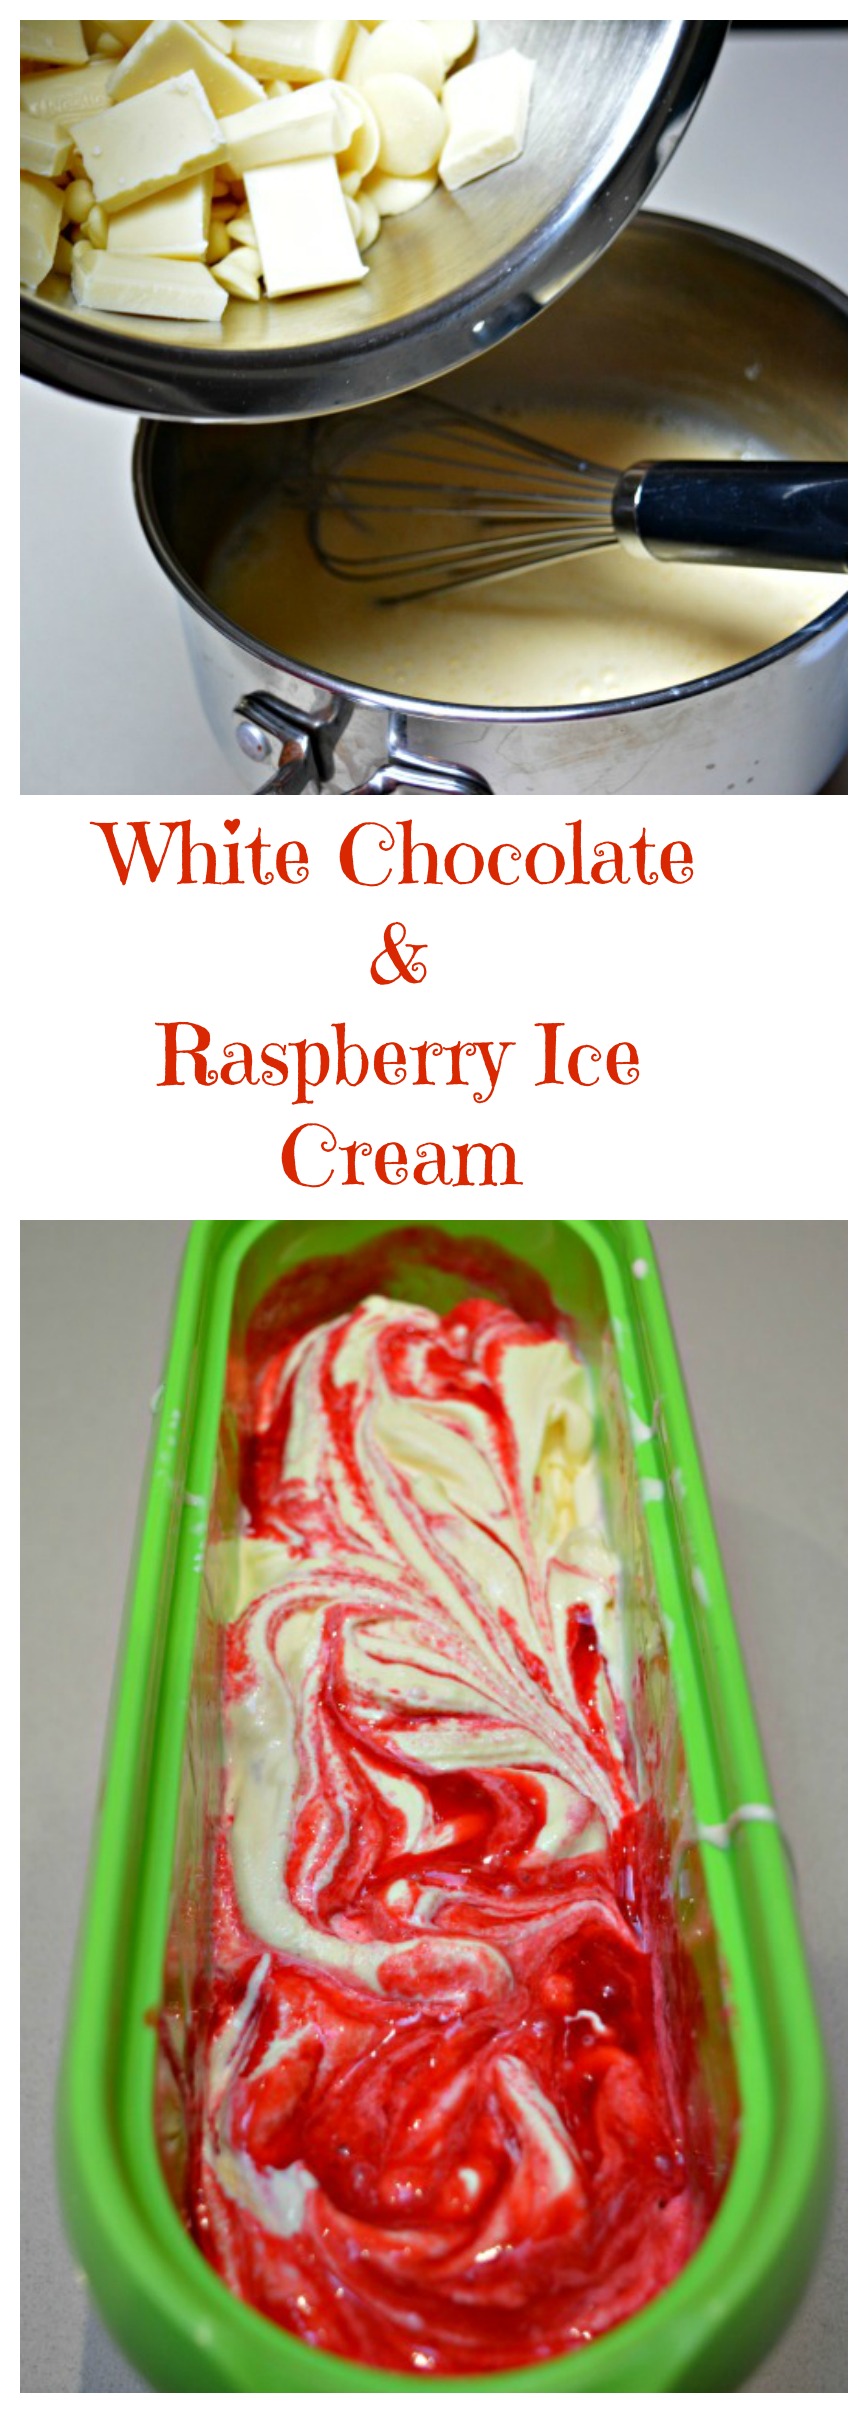 White Chocolate Raspberry Ice Cream Recipe - Mum's Lounge